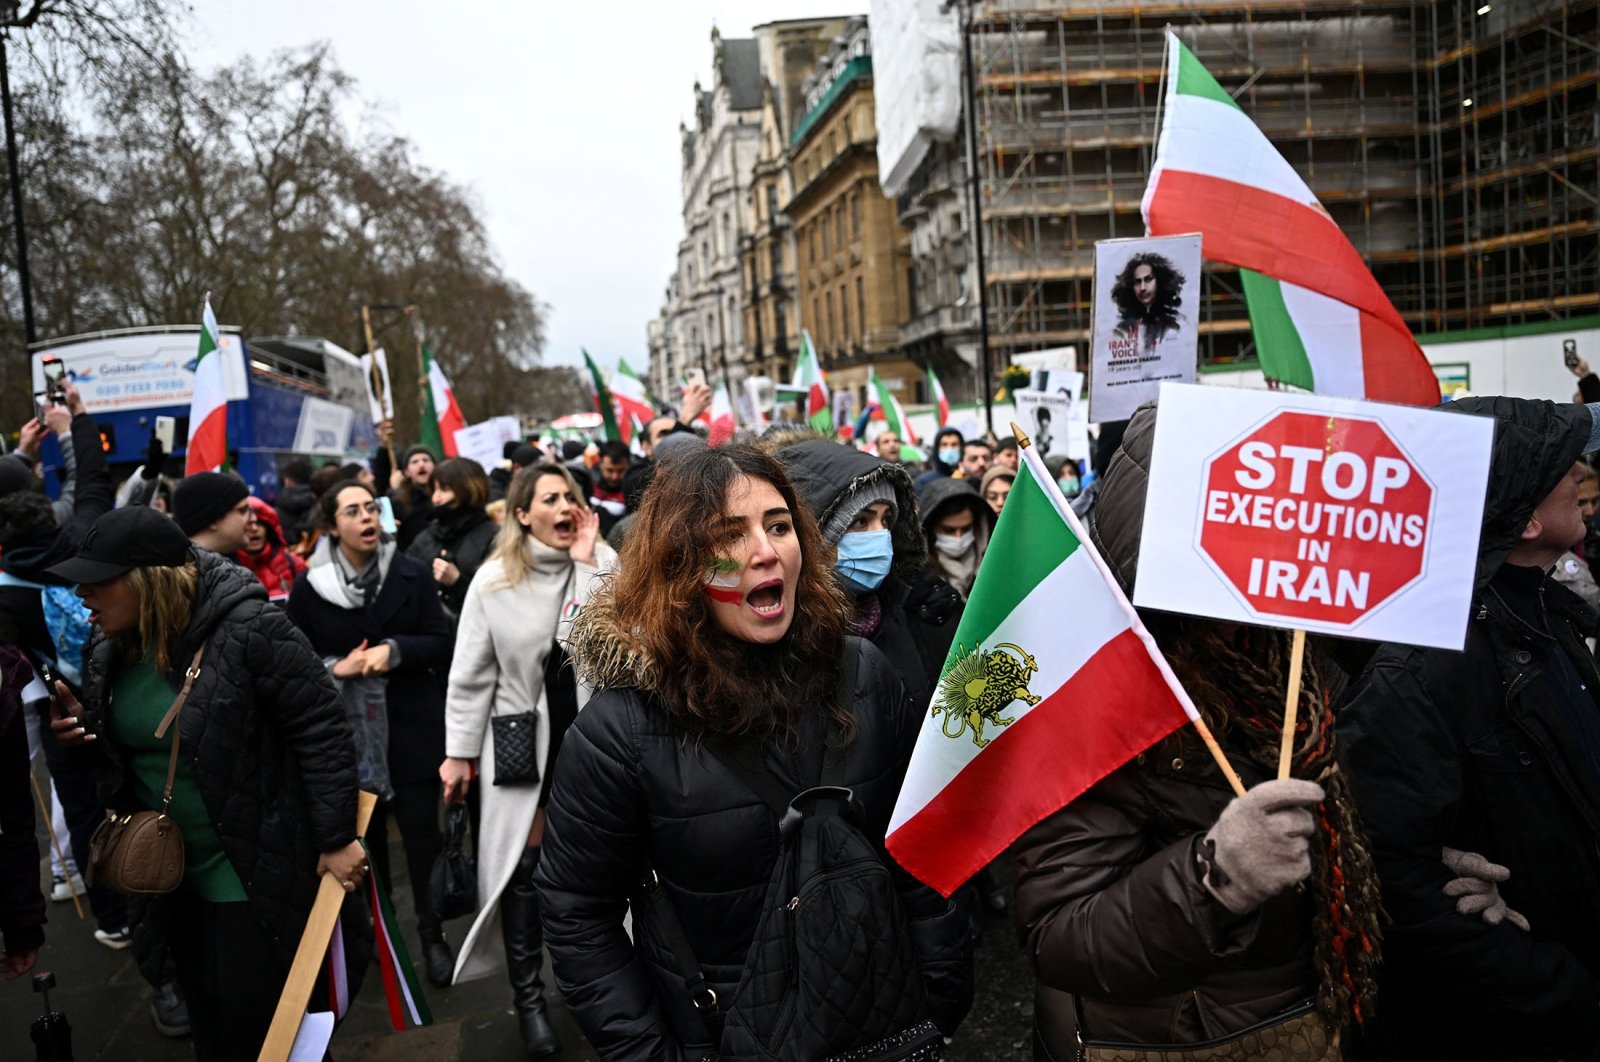 Eksekusi Iran menarik kecaman global saat tindakan keras berlanjut